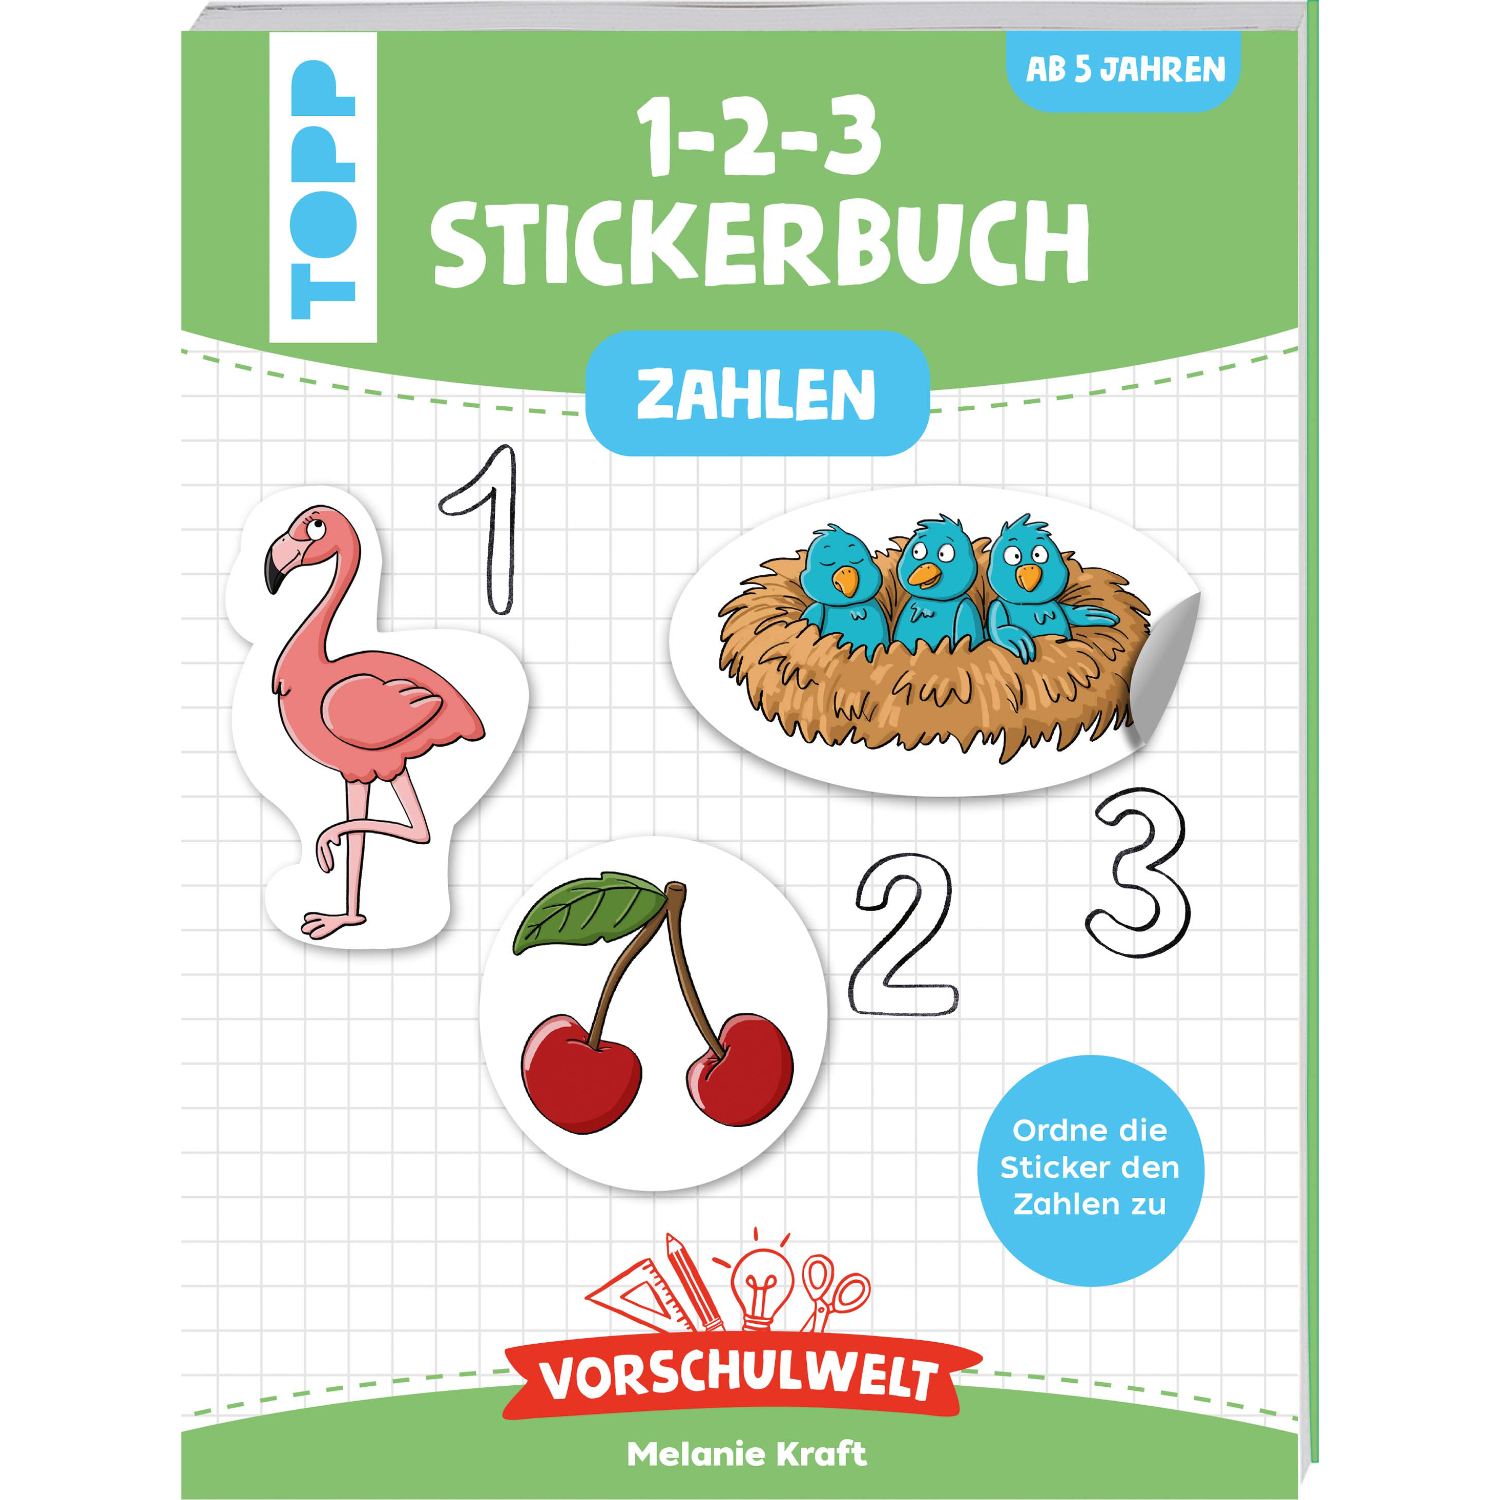 Vorschulwelt - Das 1-2-3-Stickerbuch